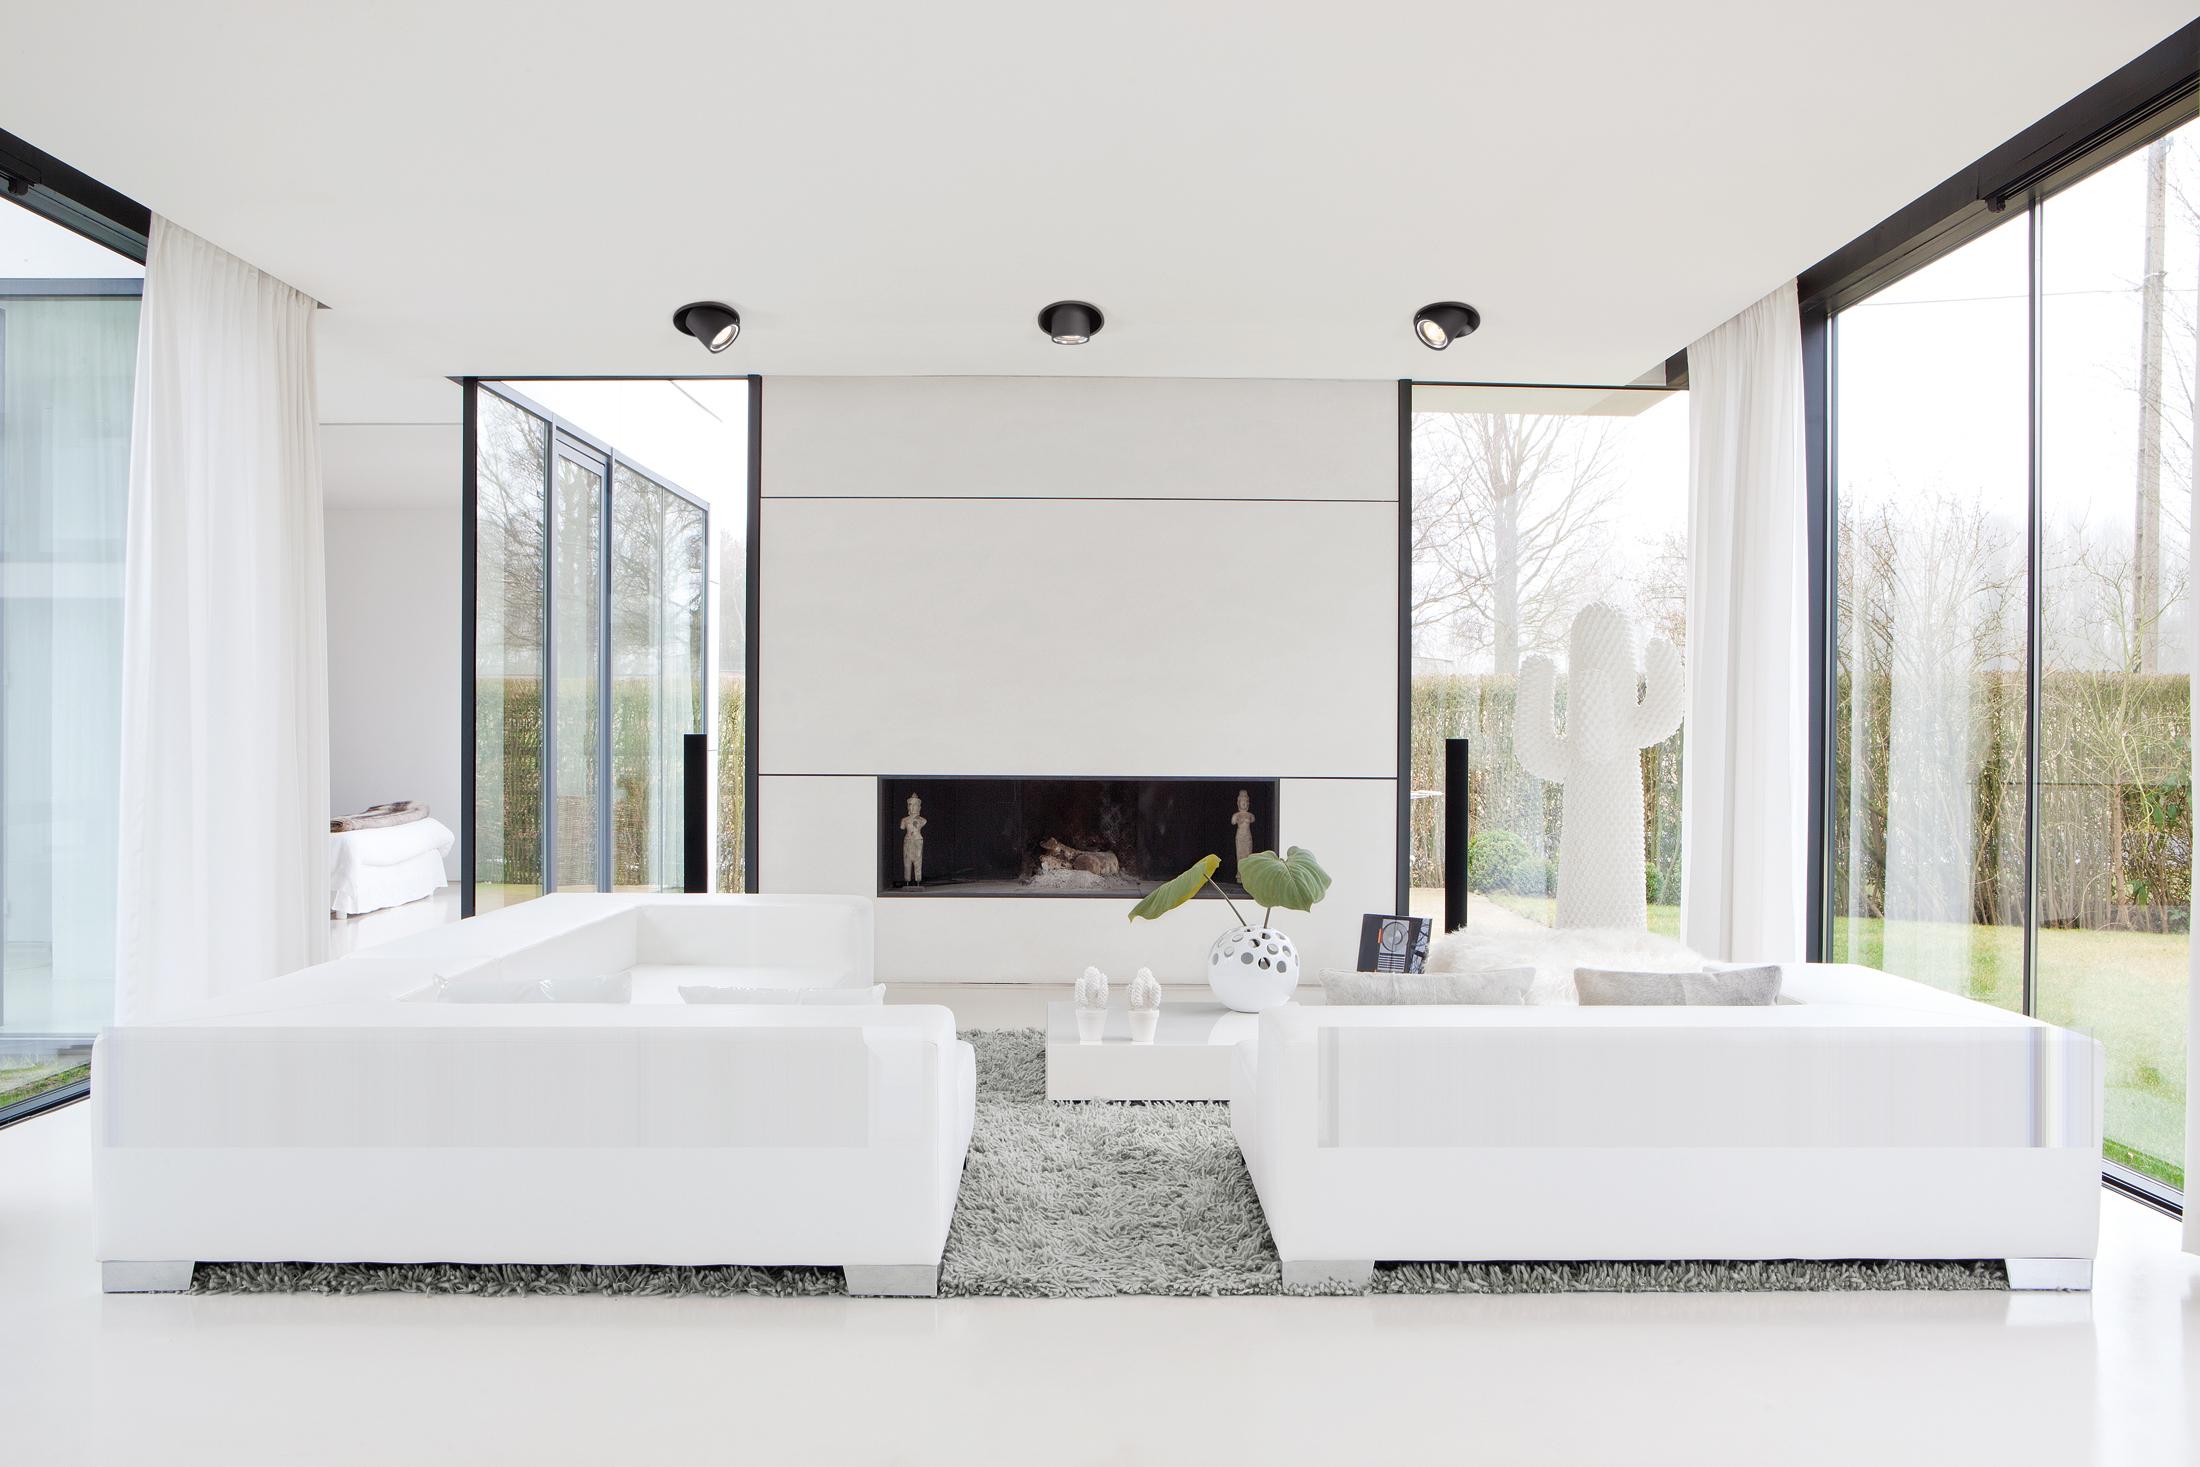 Moderne Wohnlandschaft in Weiß #teppich #kamin #wohnzimmer #sofa #minimalistisch #wohnlandschaft #bigsofa #zimmergestaltung ©Modular Lighting Instruments